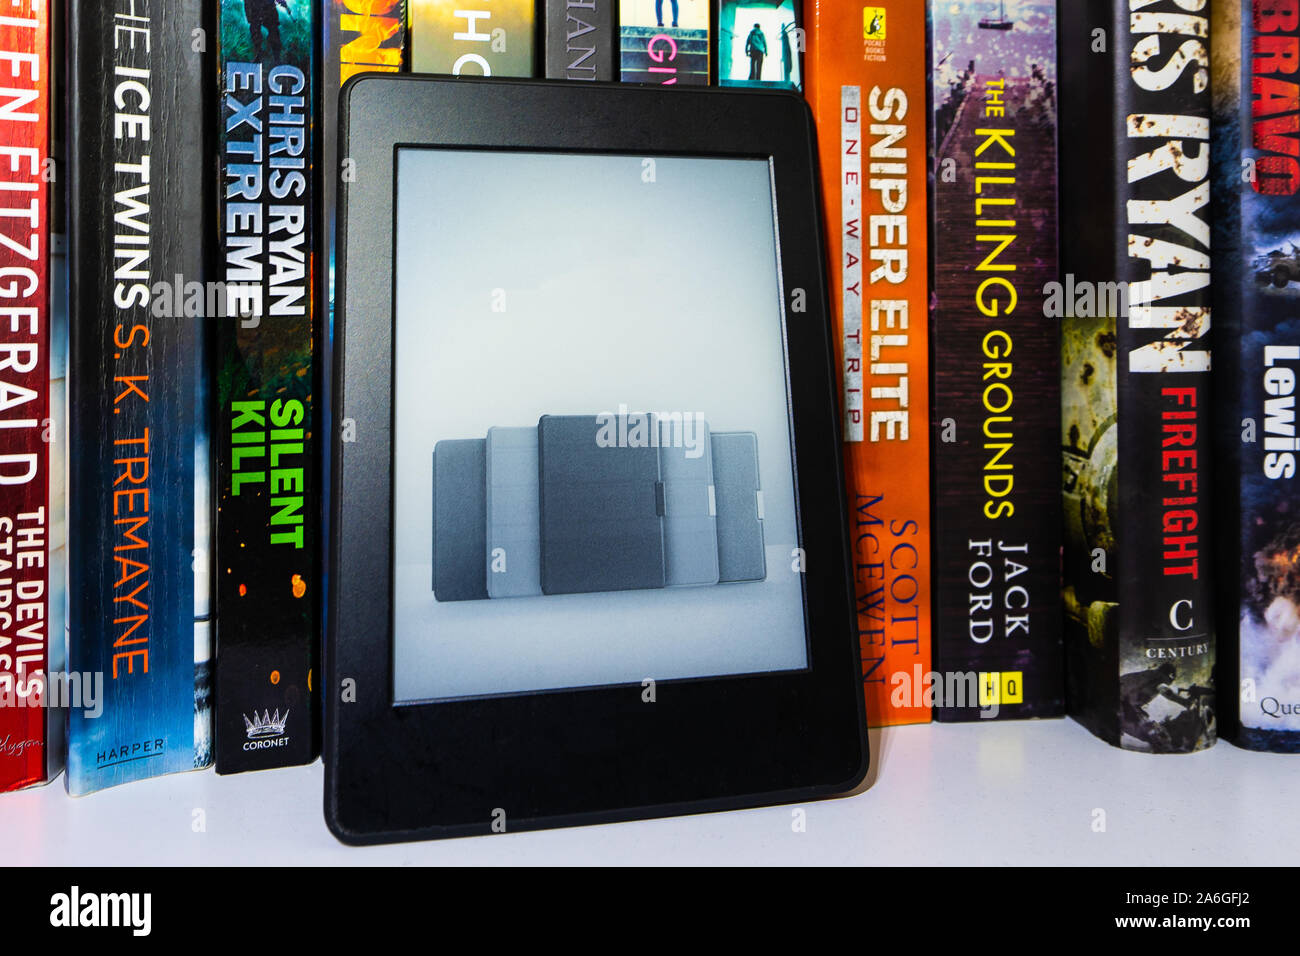 Un  Kindle ebook reader sur une étagère avec des livres de poche.  C'est le Kindle 3 modèle. Pour un usage éditorial uniquement Photo Stock -  Alamy